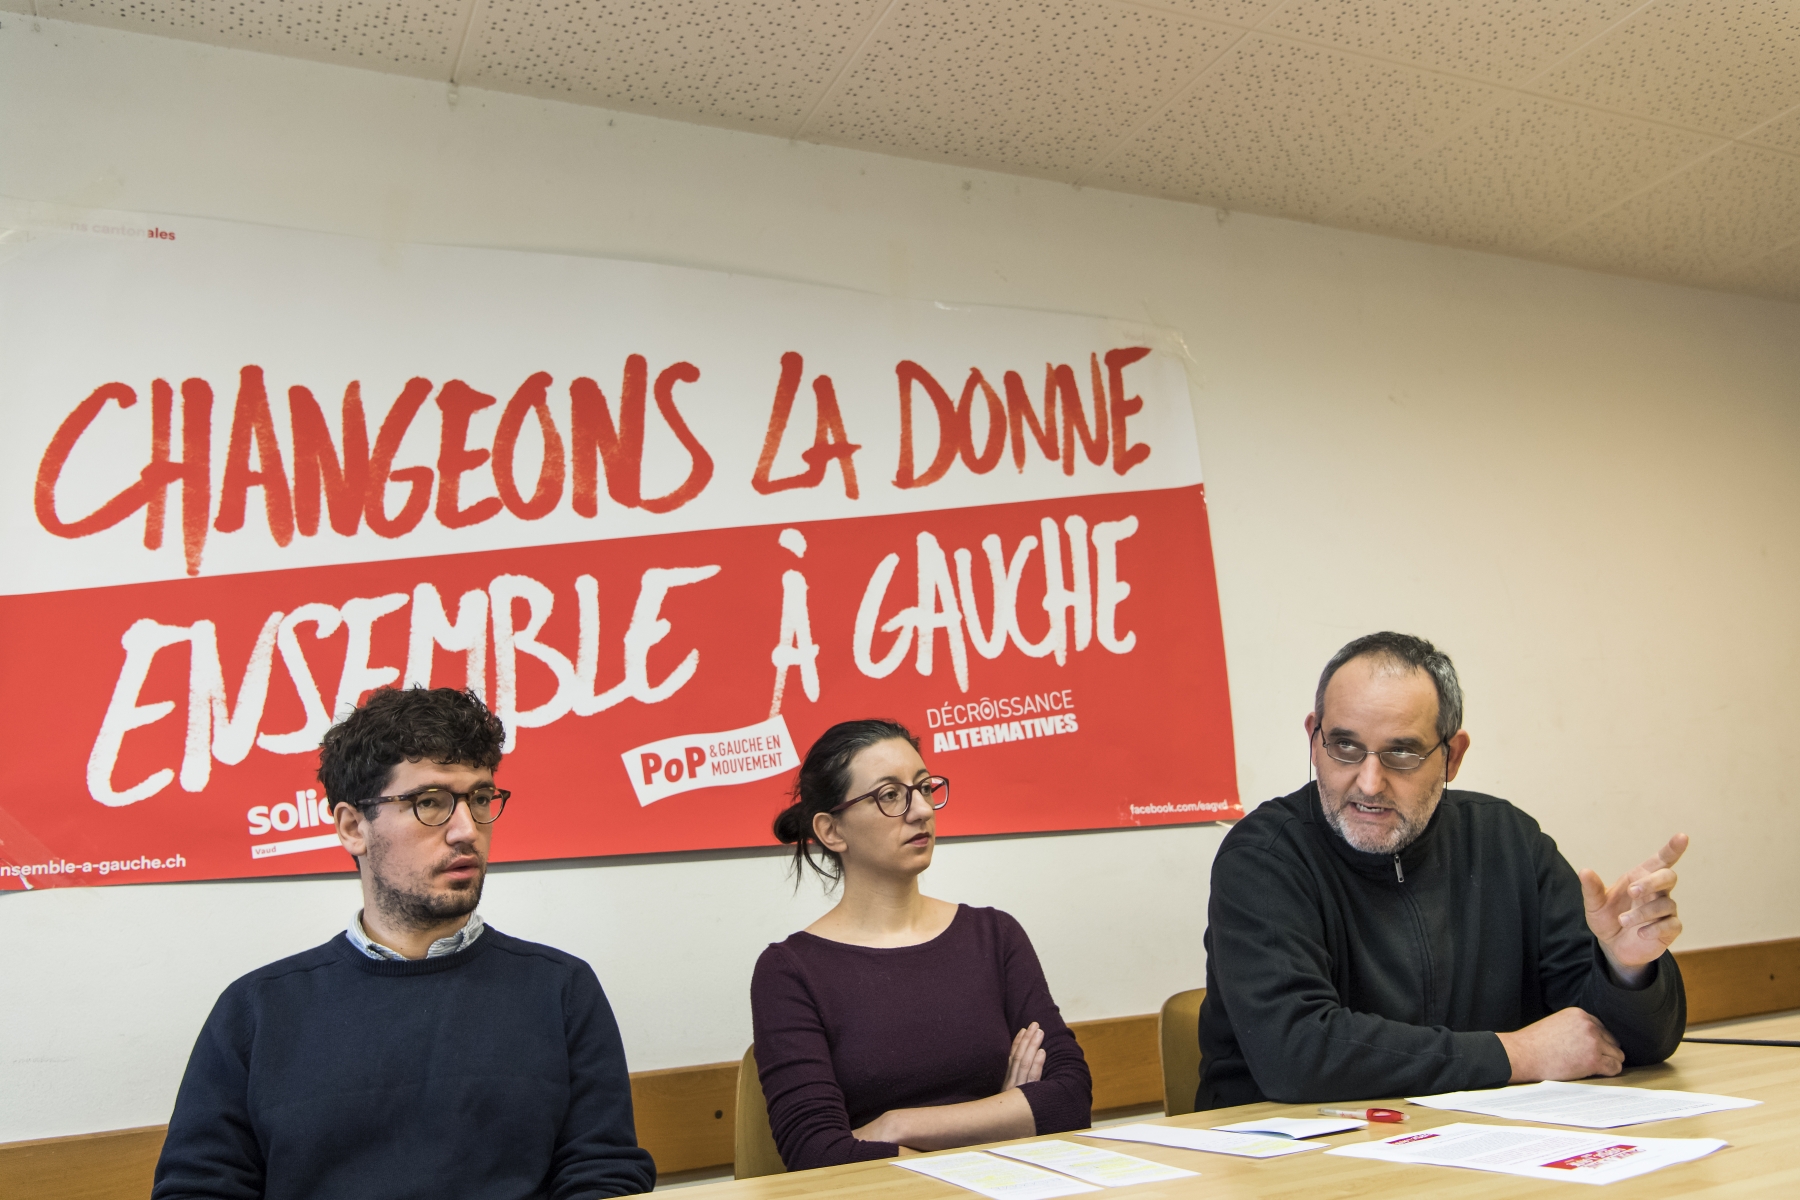 Hadrien Buclin, Céline Misiego et Yvan Luccarini, candidats de la liste "Ensemble à Gauche" pour l'élection au Conseil d'Etat dénoncent le "consensus mou" gauche-PLR du gouvernement vaudois.